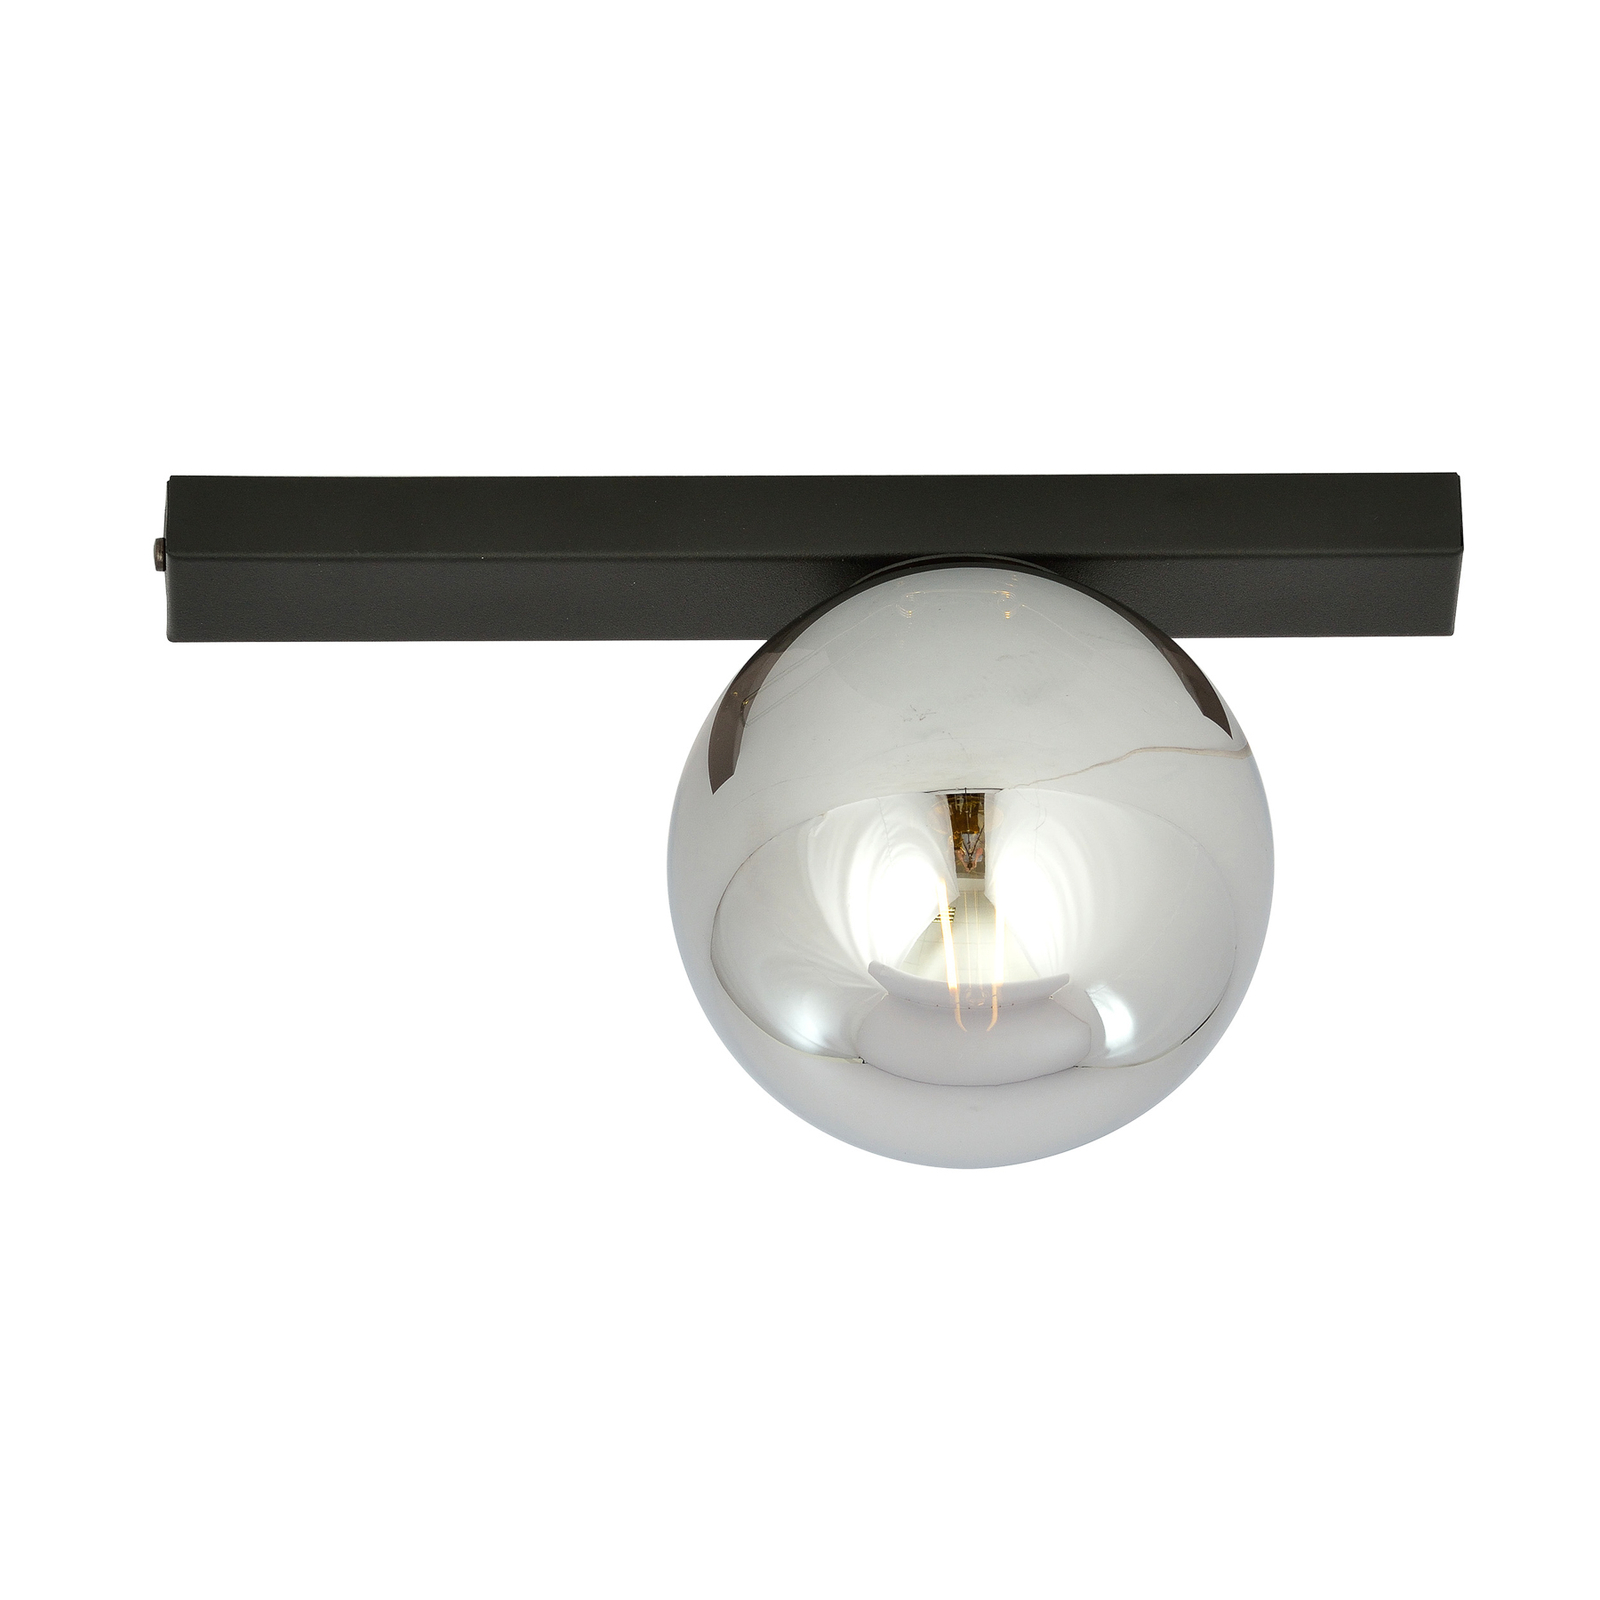 Plafondlamp Fit, zwart/grafiet, 1-lamp